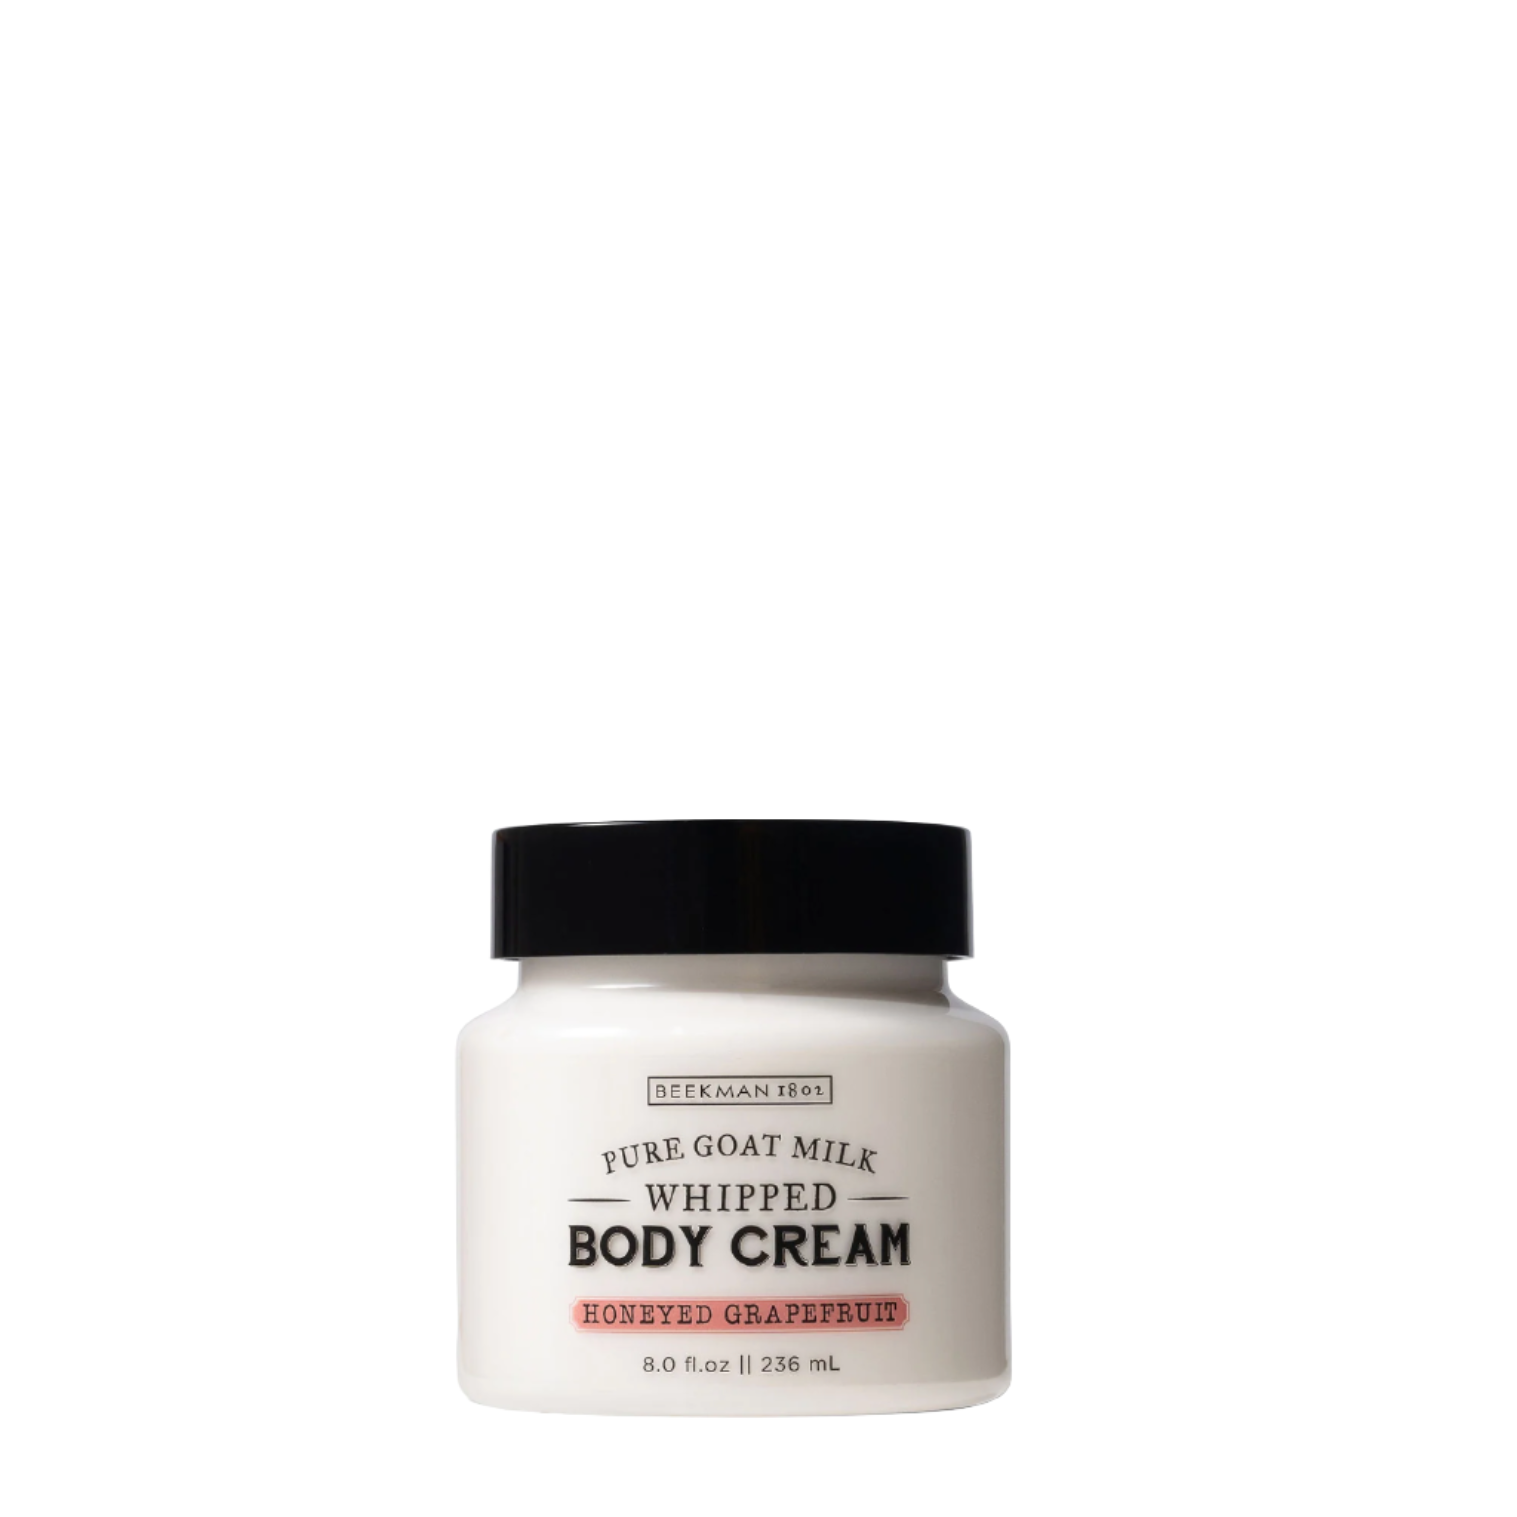 Honeyed Grapefruit Body Cream